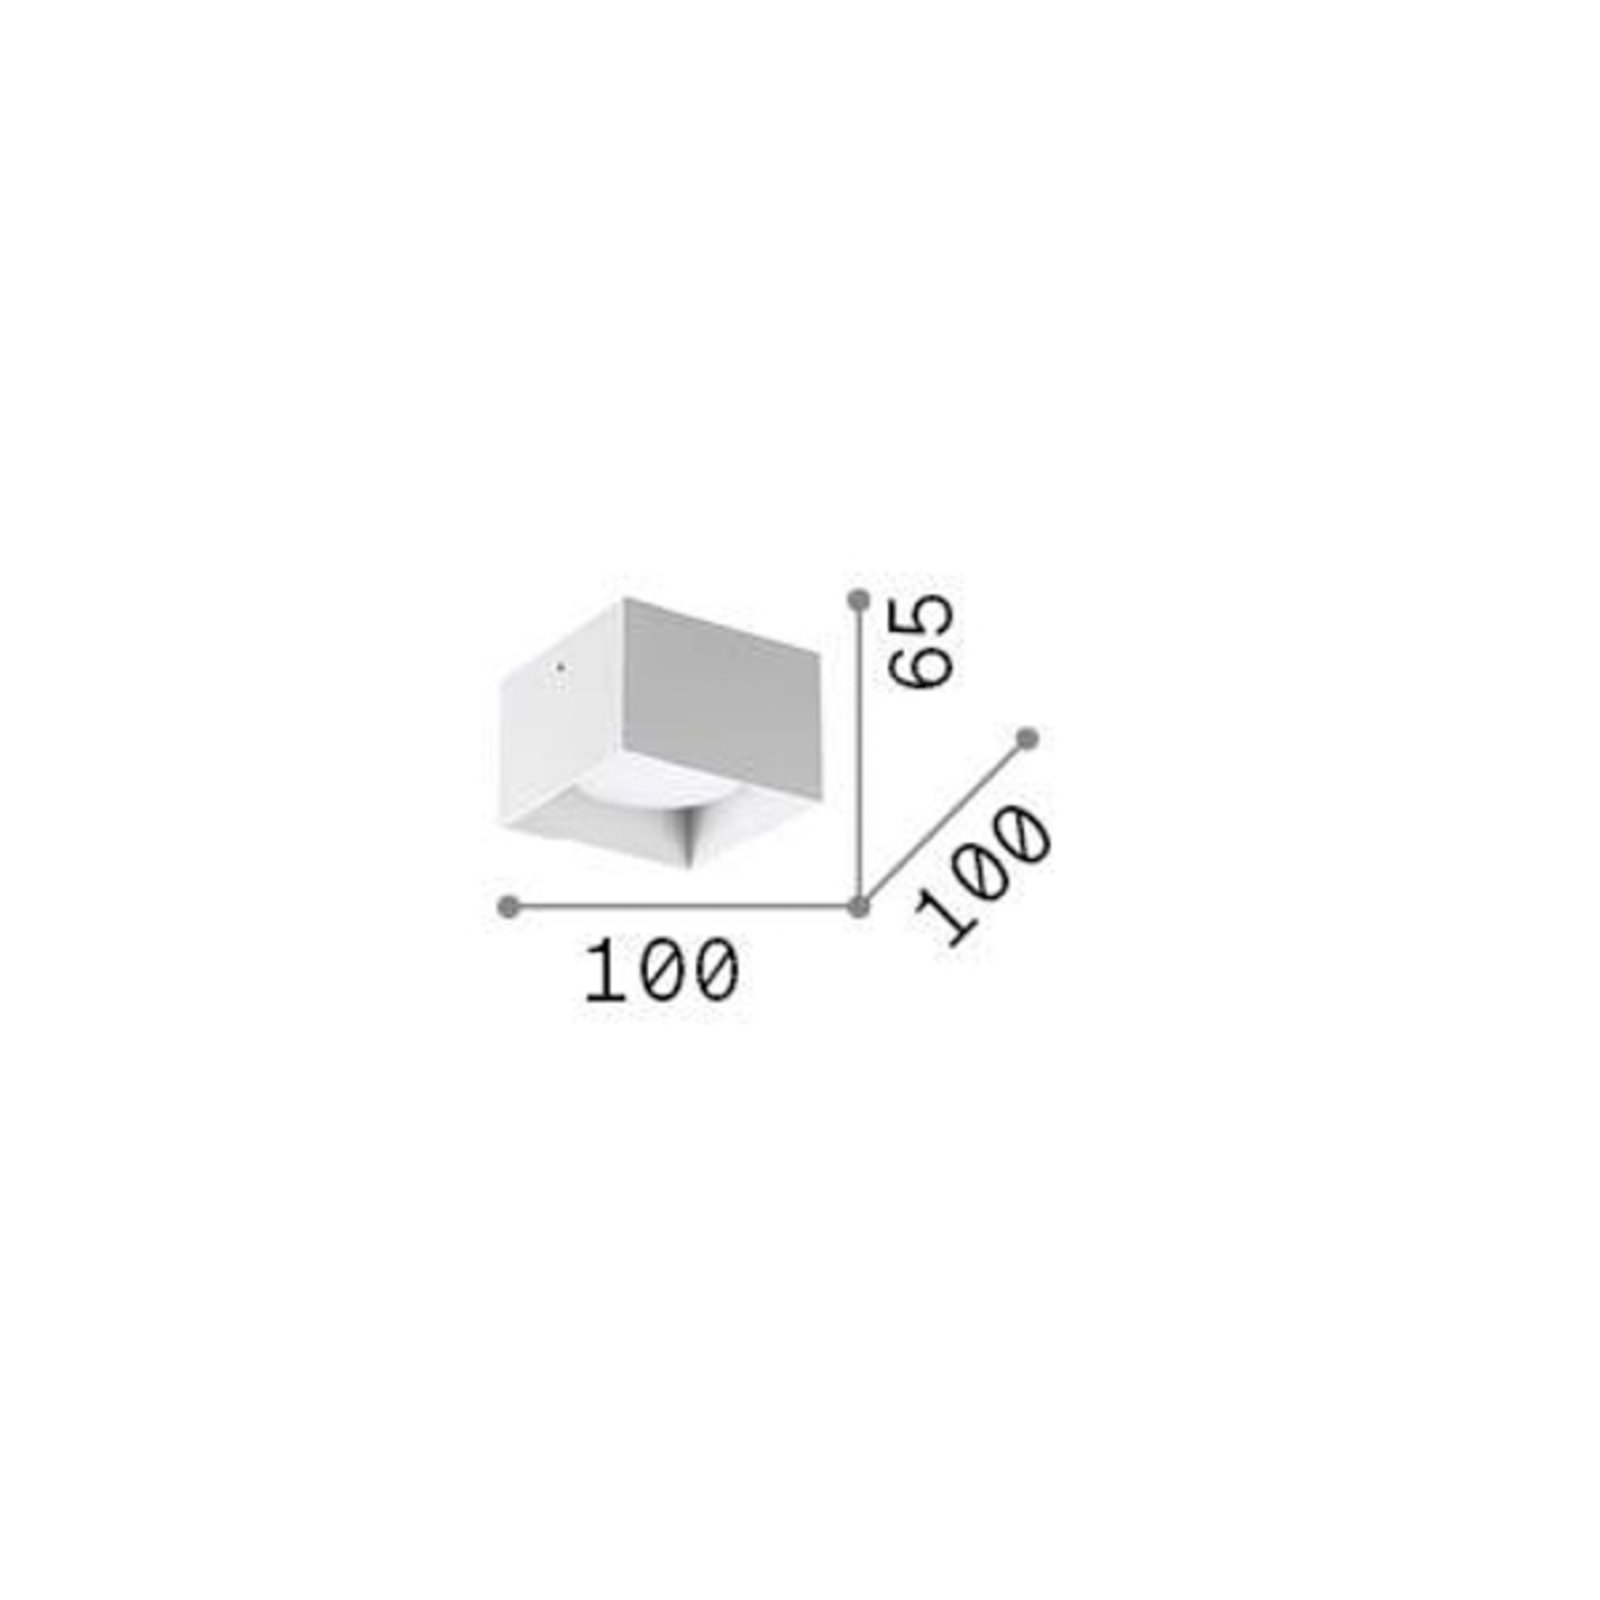 Ideal Lux ledlámpa Spike Square, króm színű, alumínium, 10x10 cm